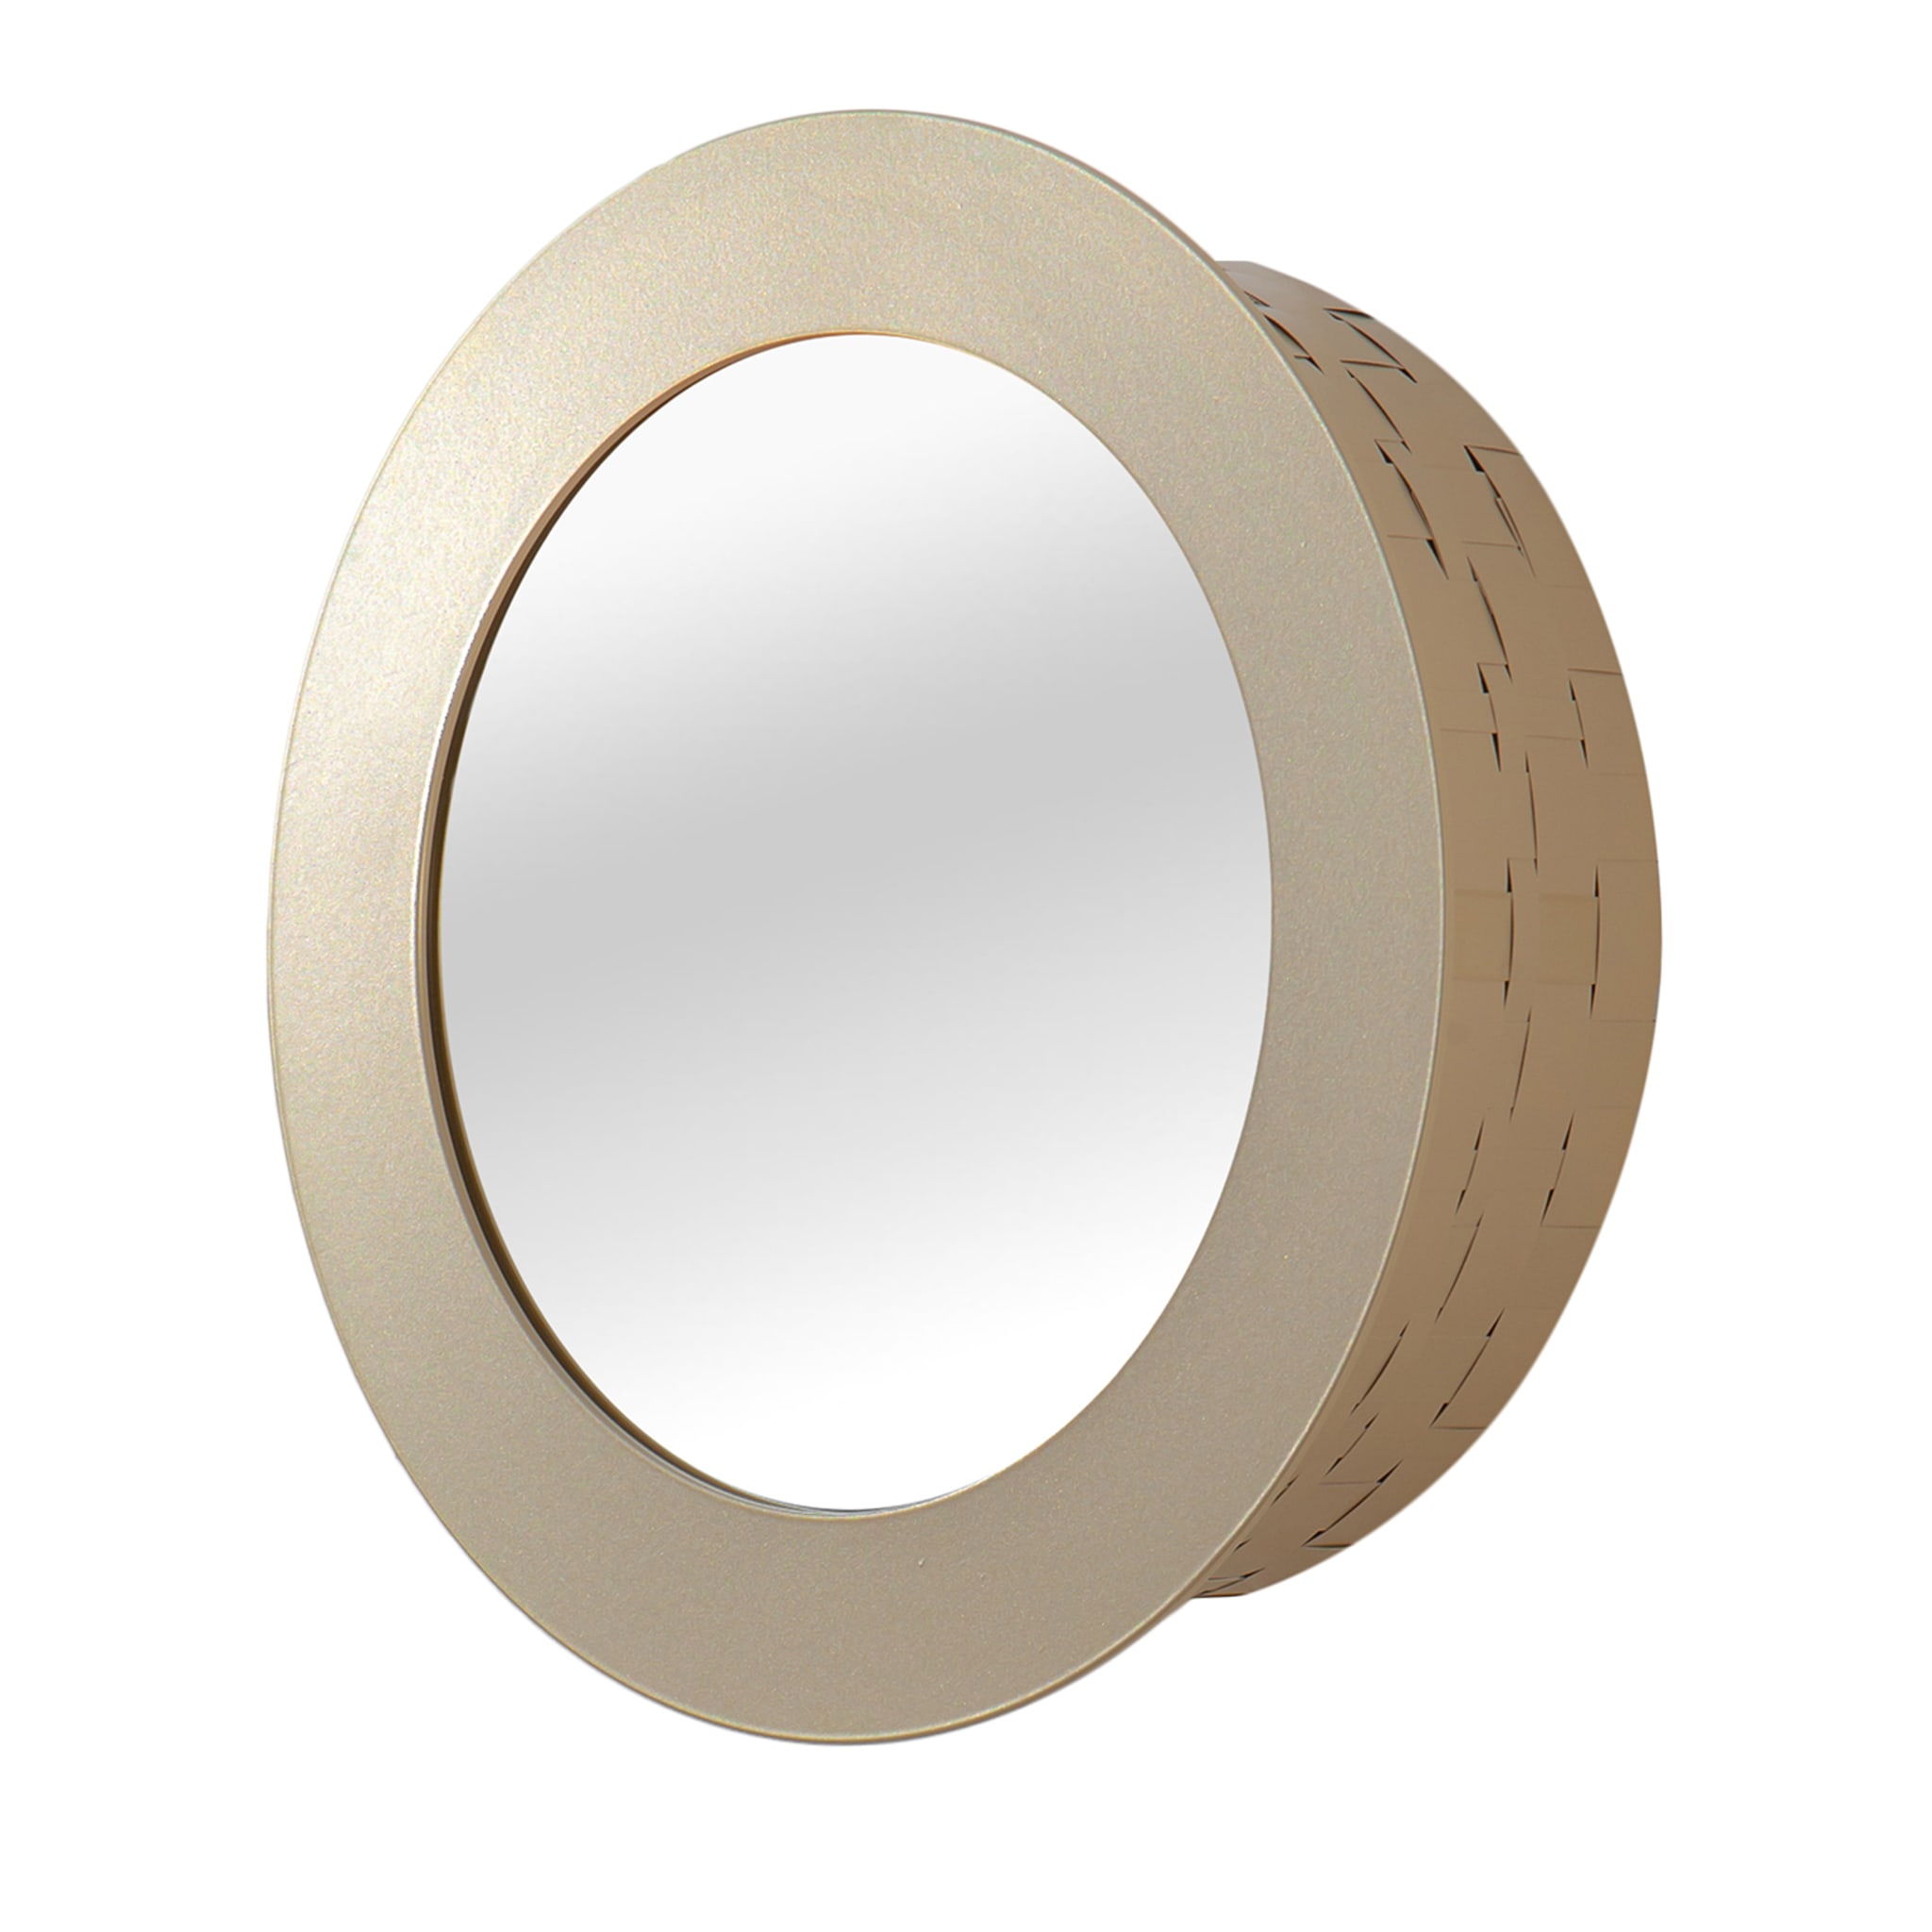 Celato 30 Round Golden Mirror - Main view